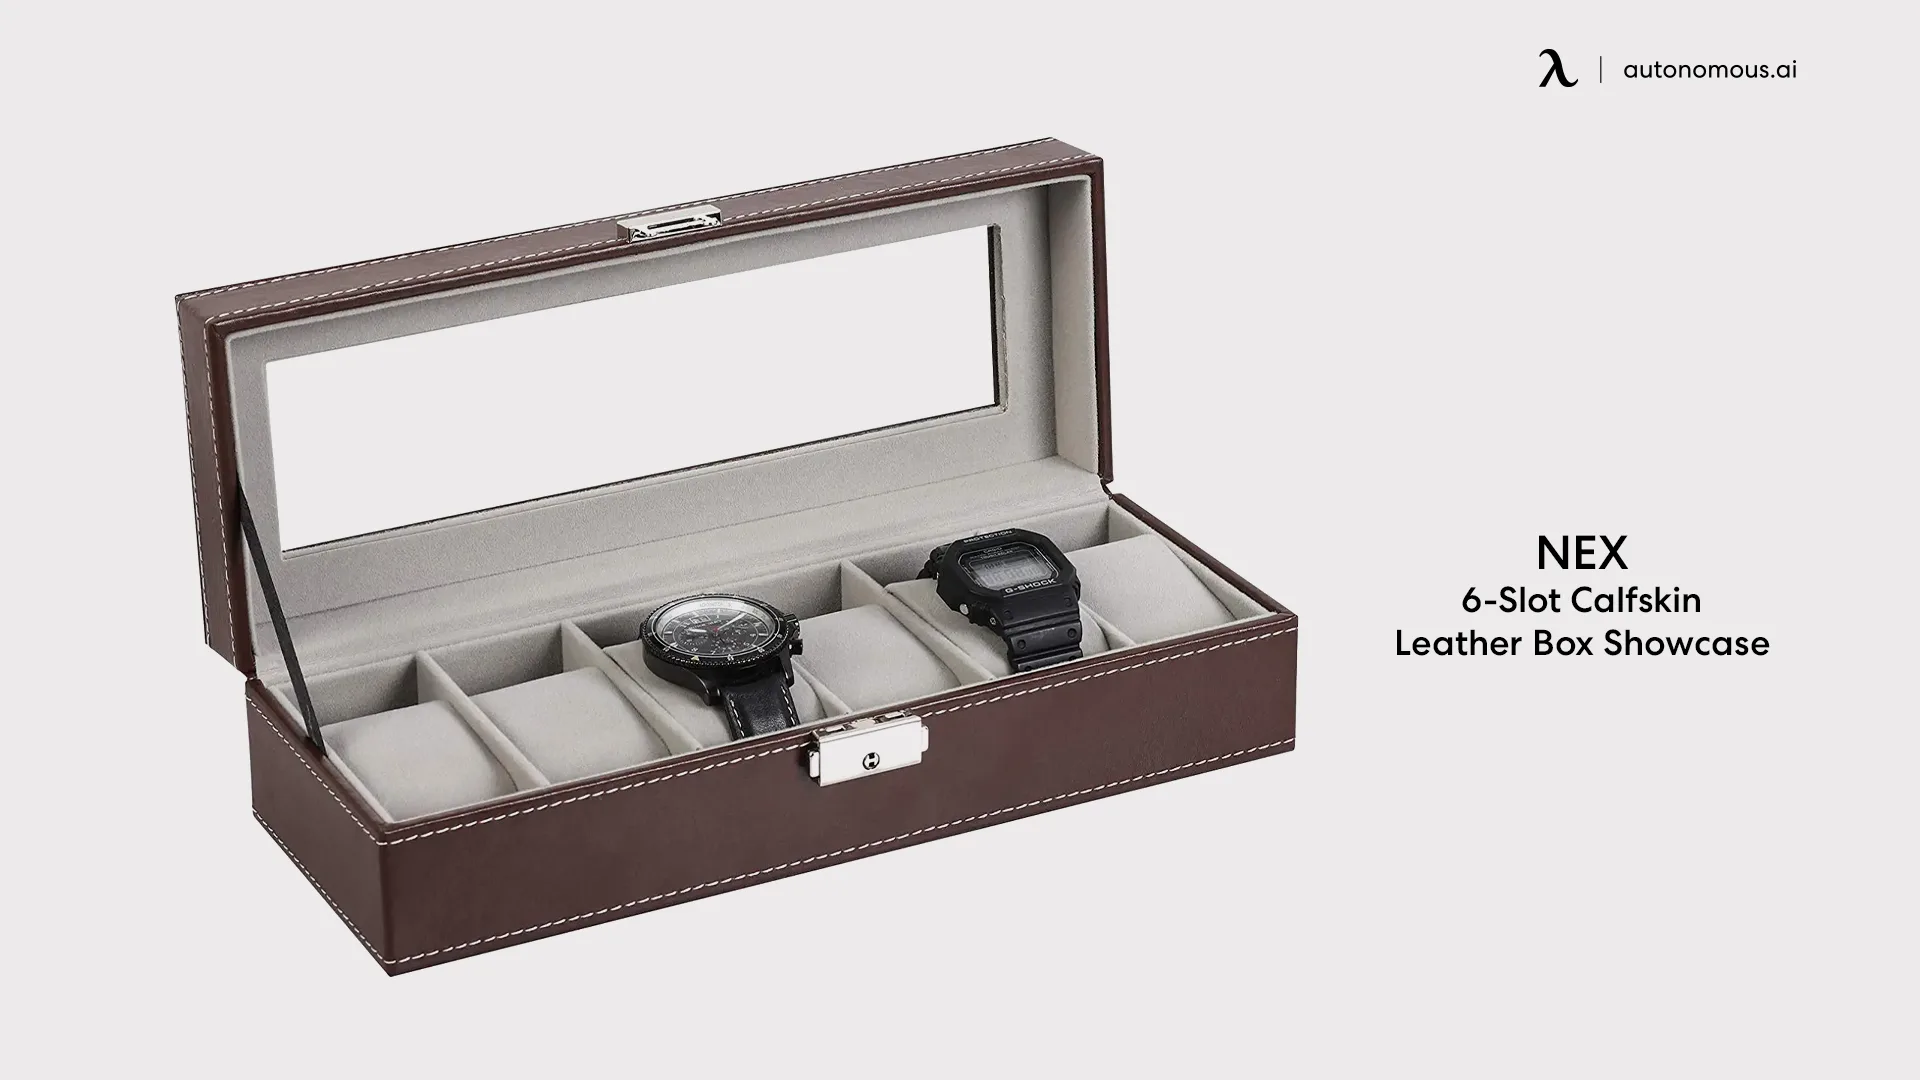 NEX 6-Slot Calfskin Leather Box Showcase